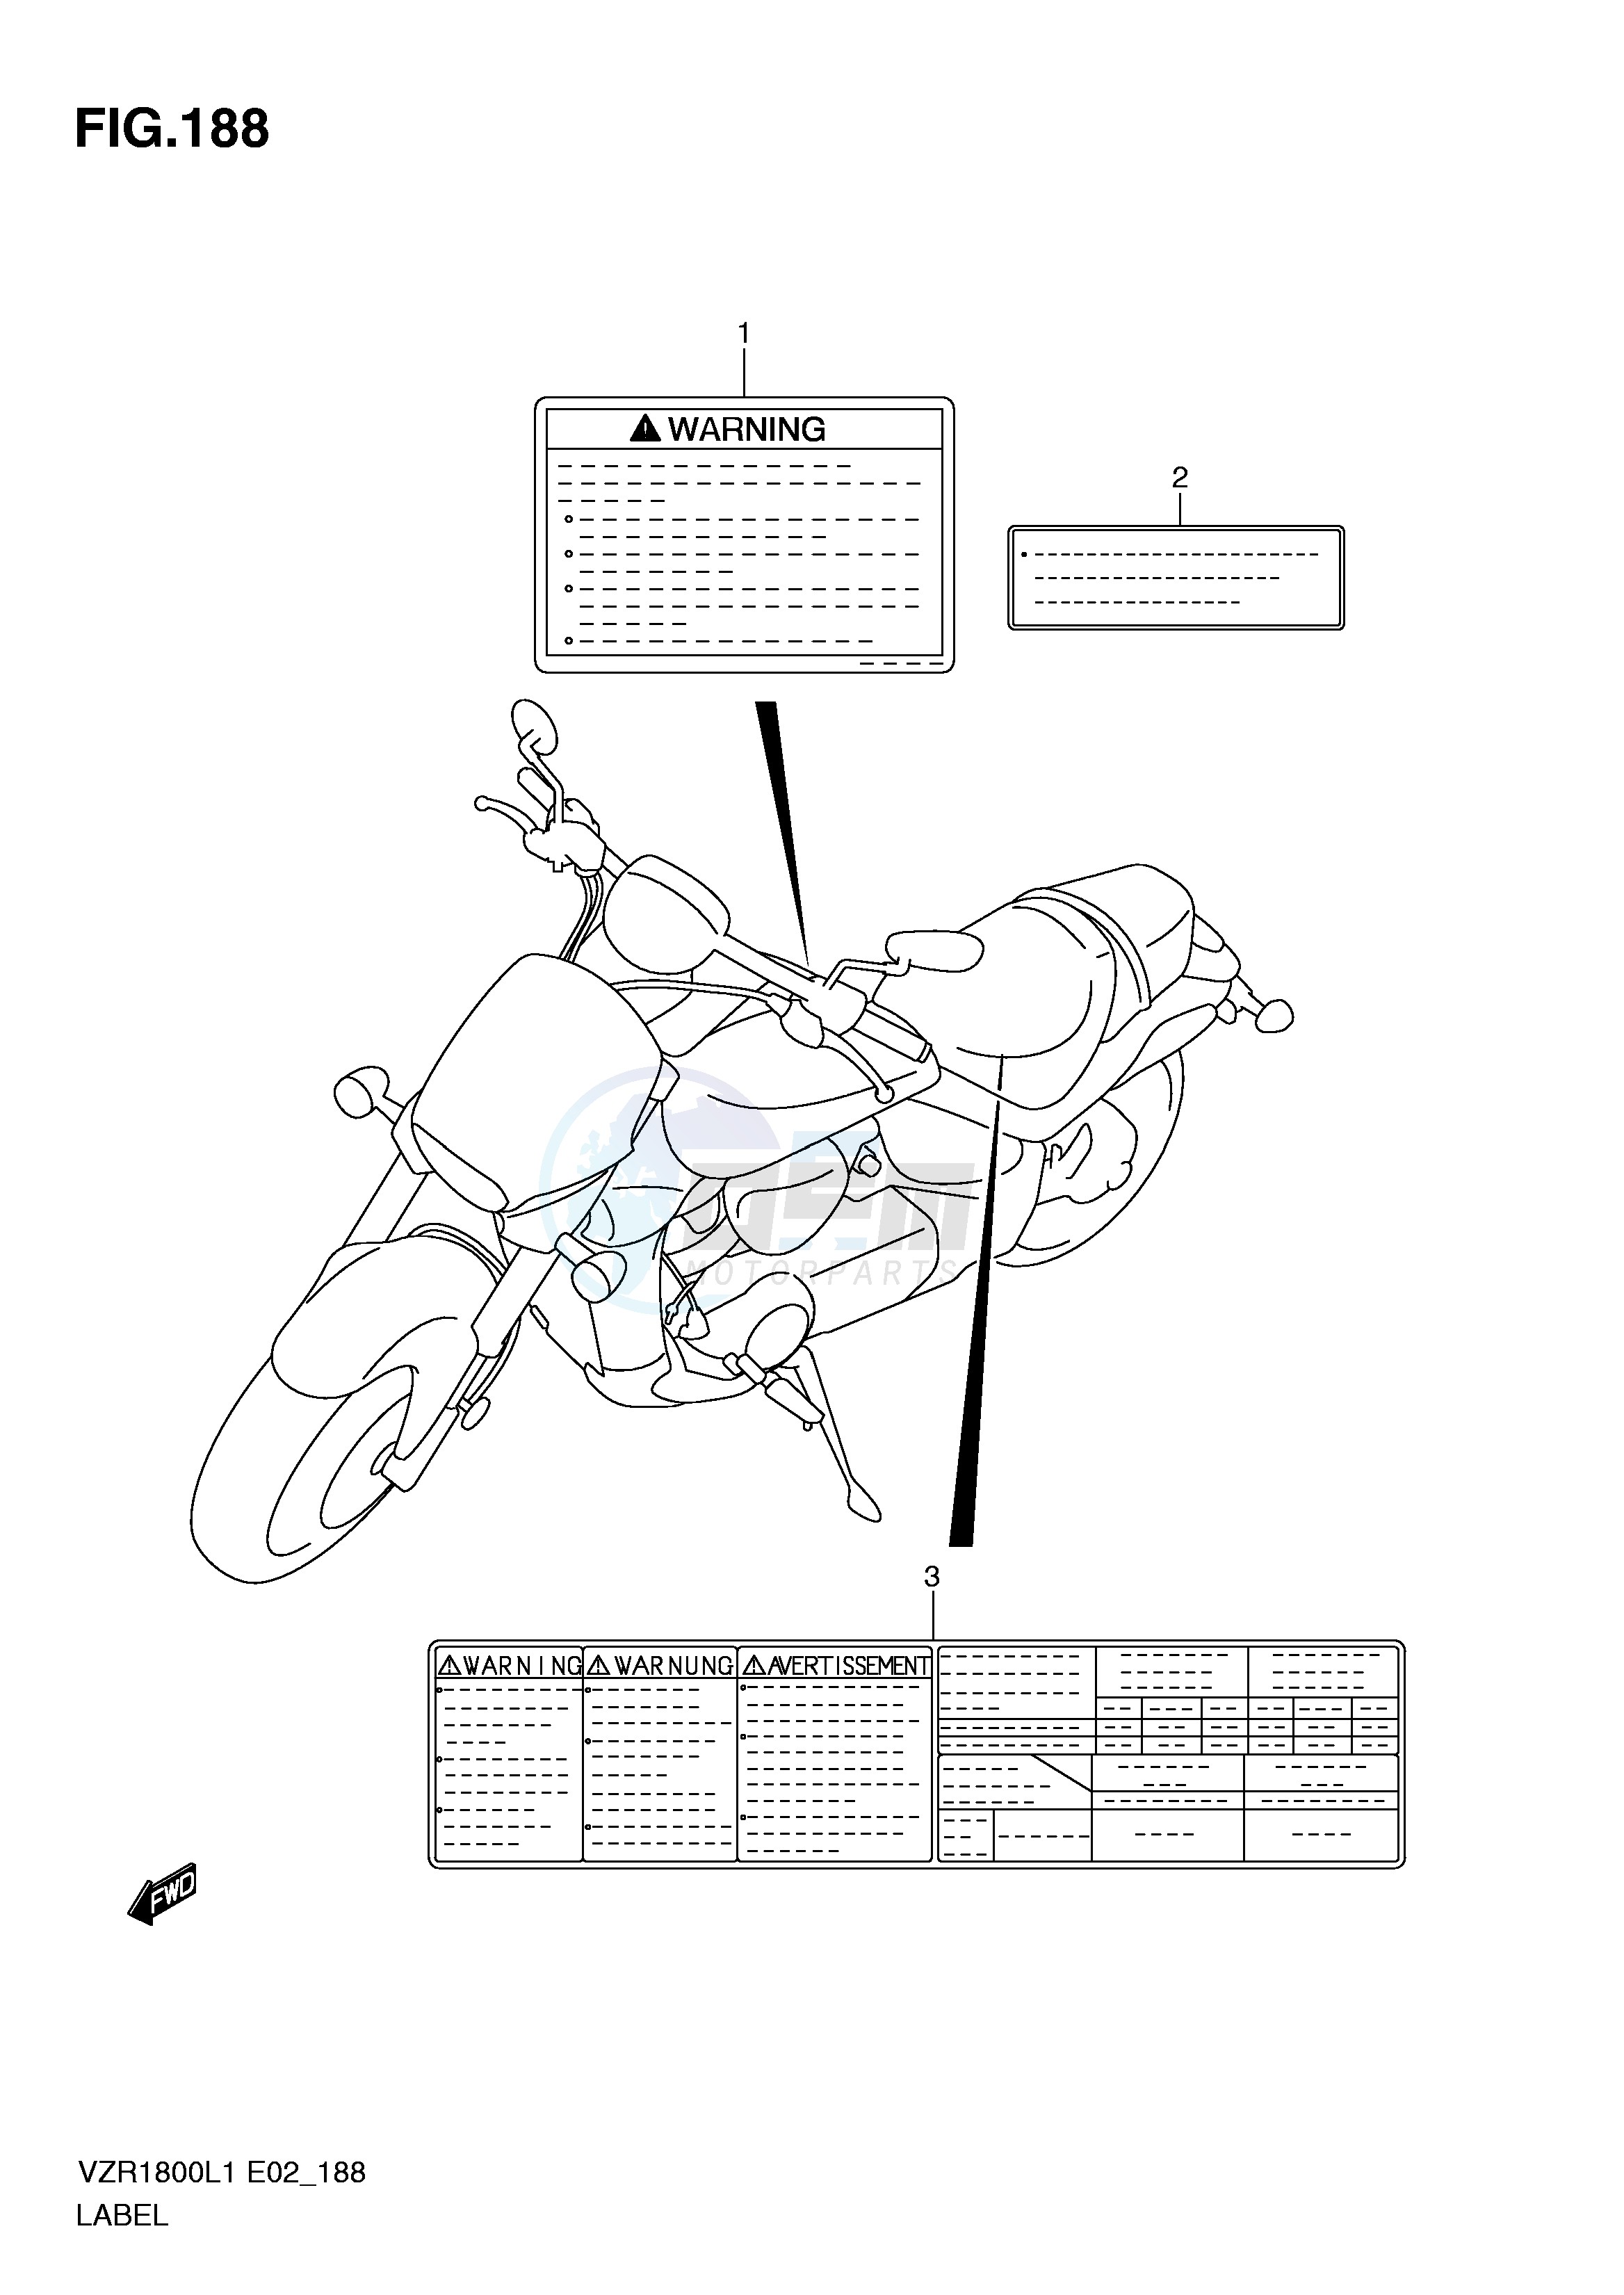 LABEL (VZR1800ZL1 E19) blueprint